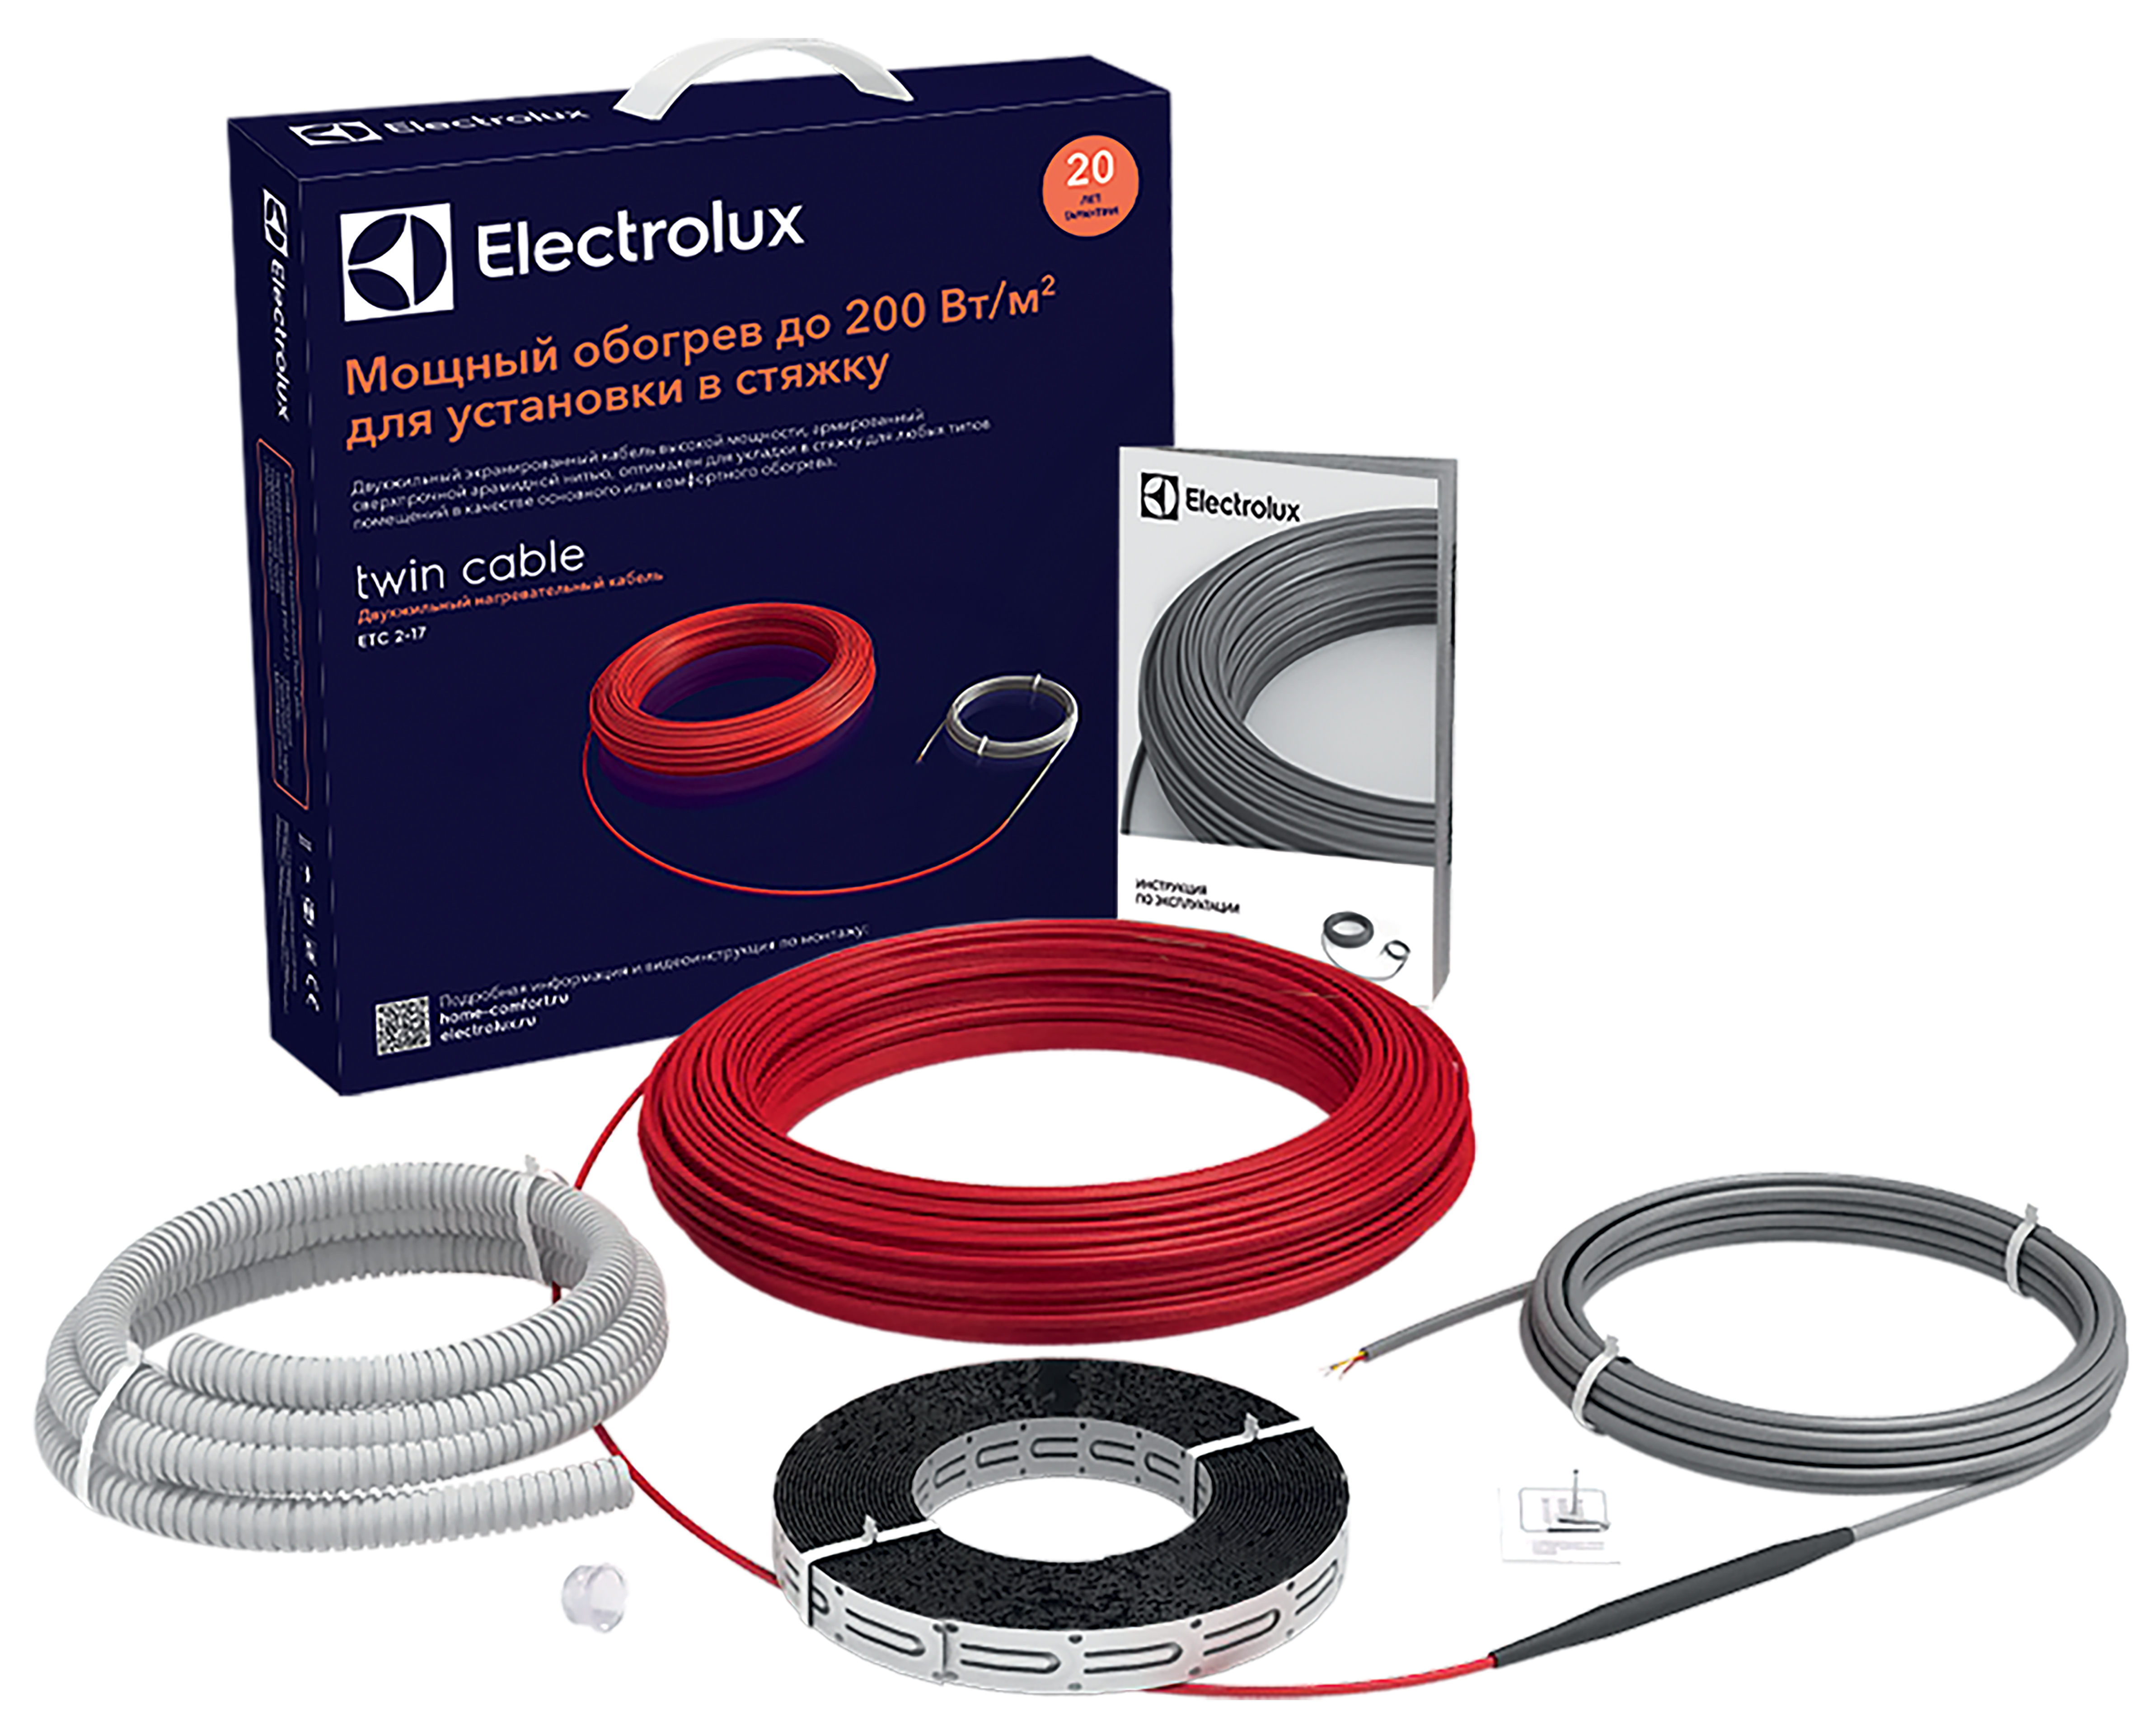 Теплый пол Electrolux под линолеум Electrolux Twin Cable ETC 2-17-400